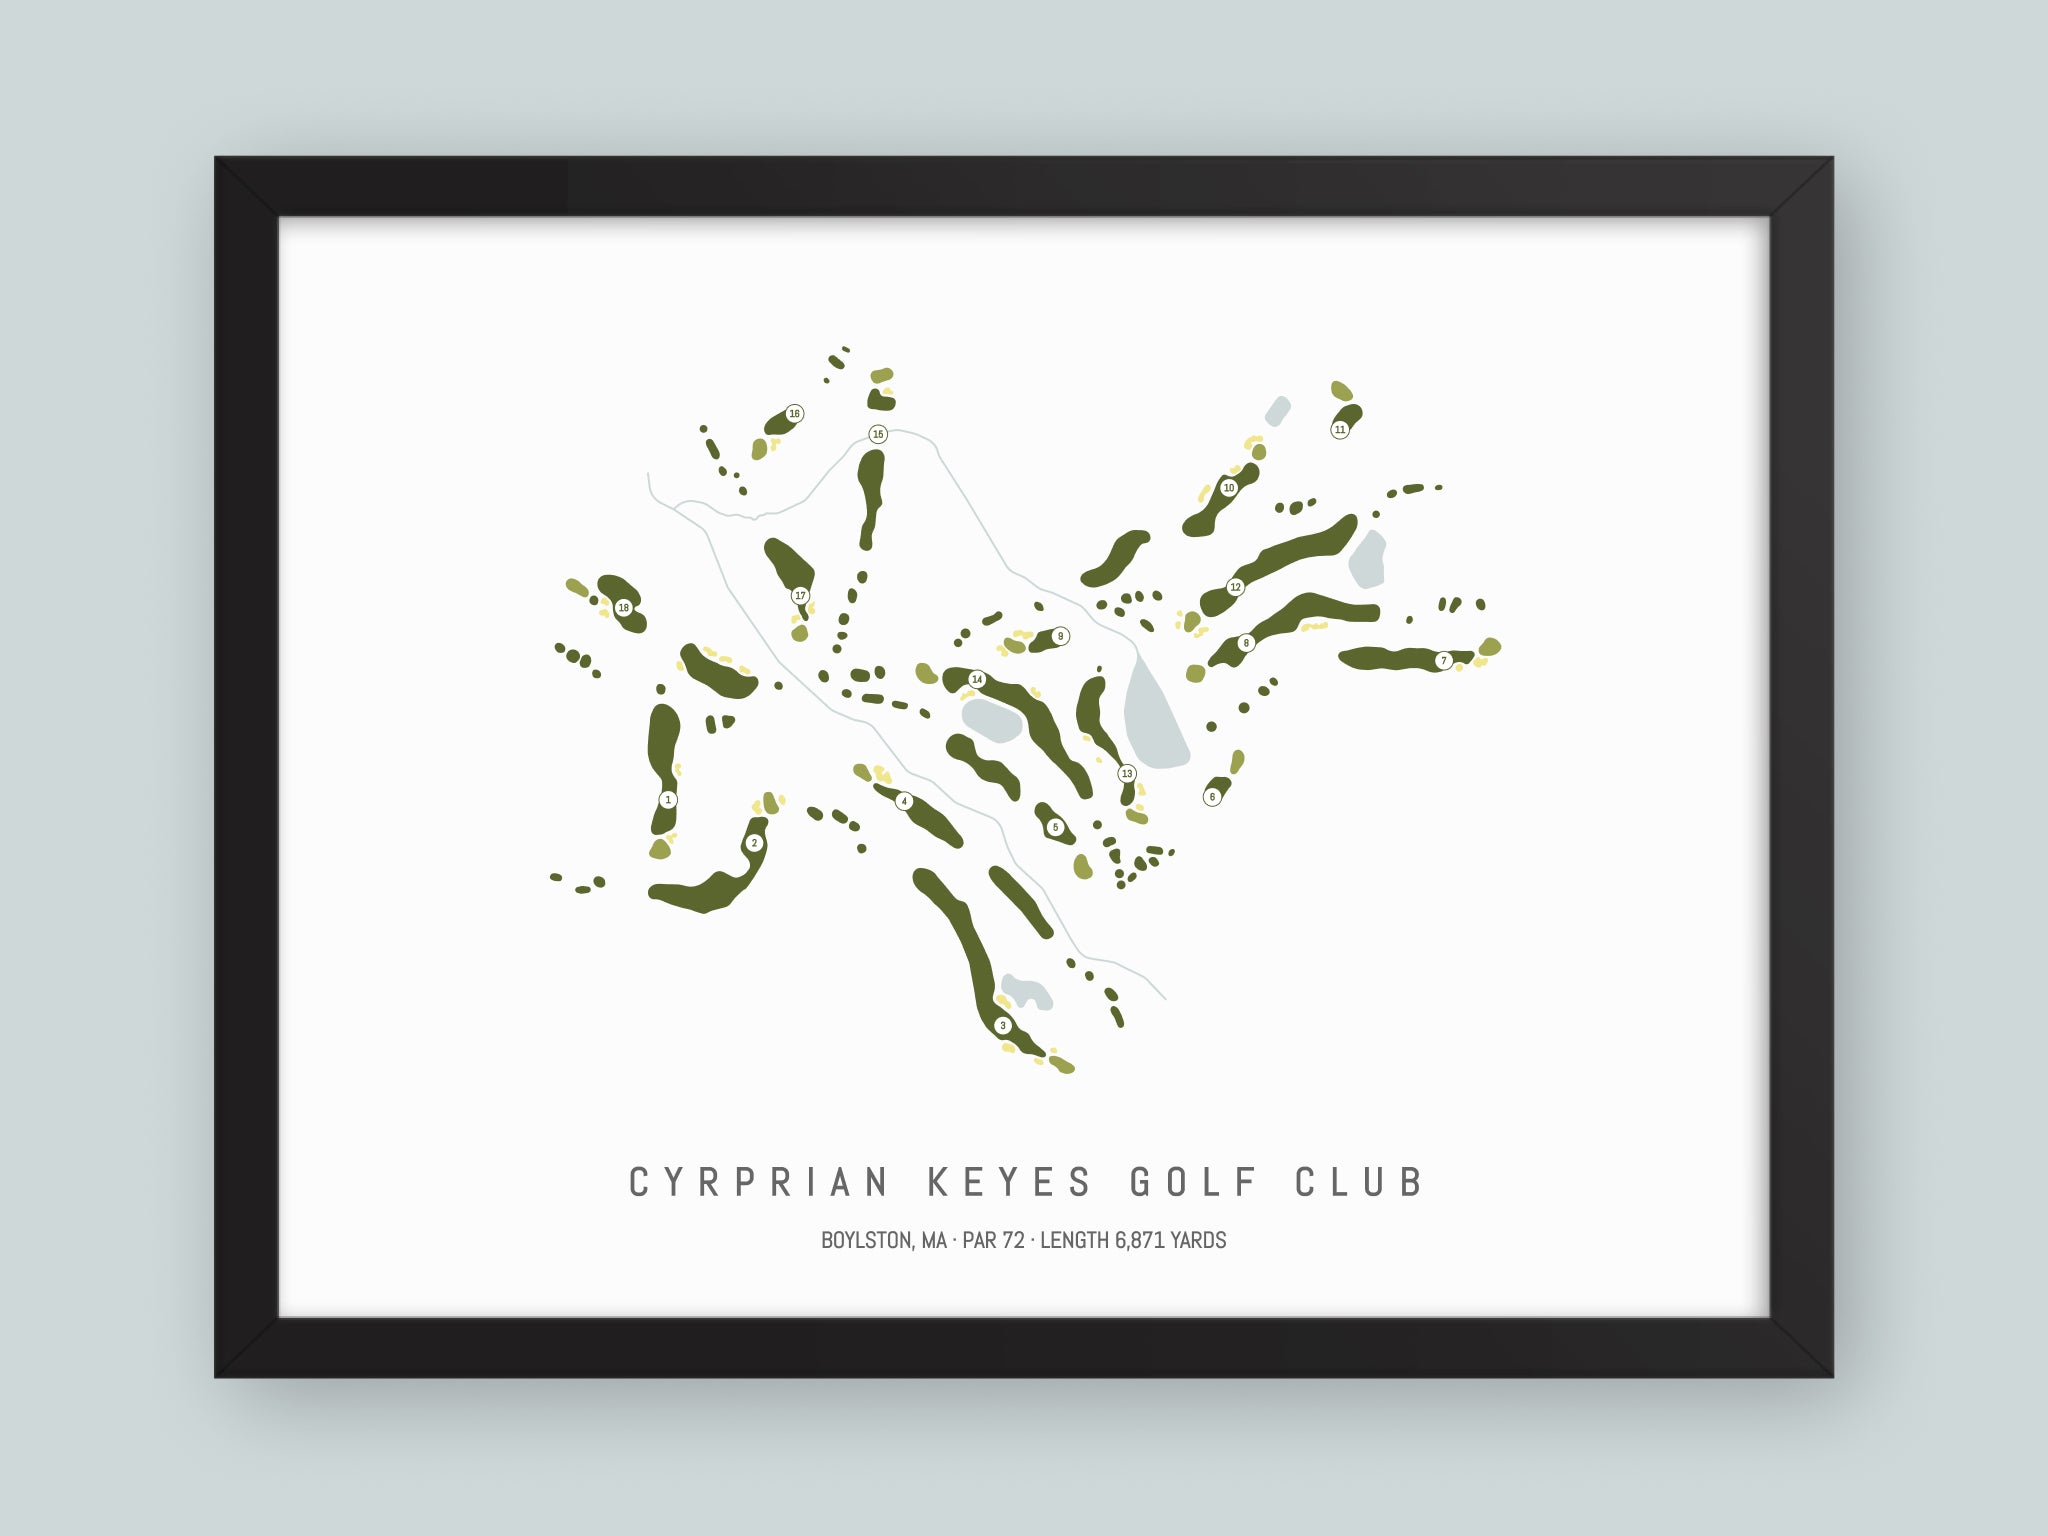 Cyrprian Keyes Golf Club